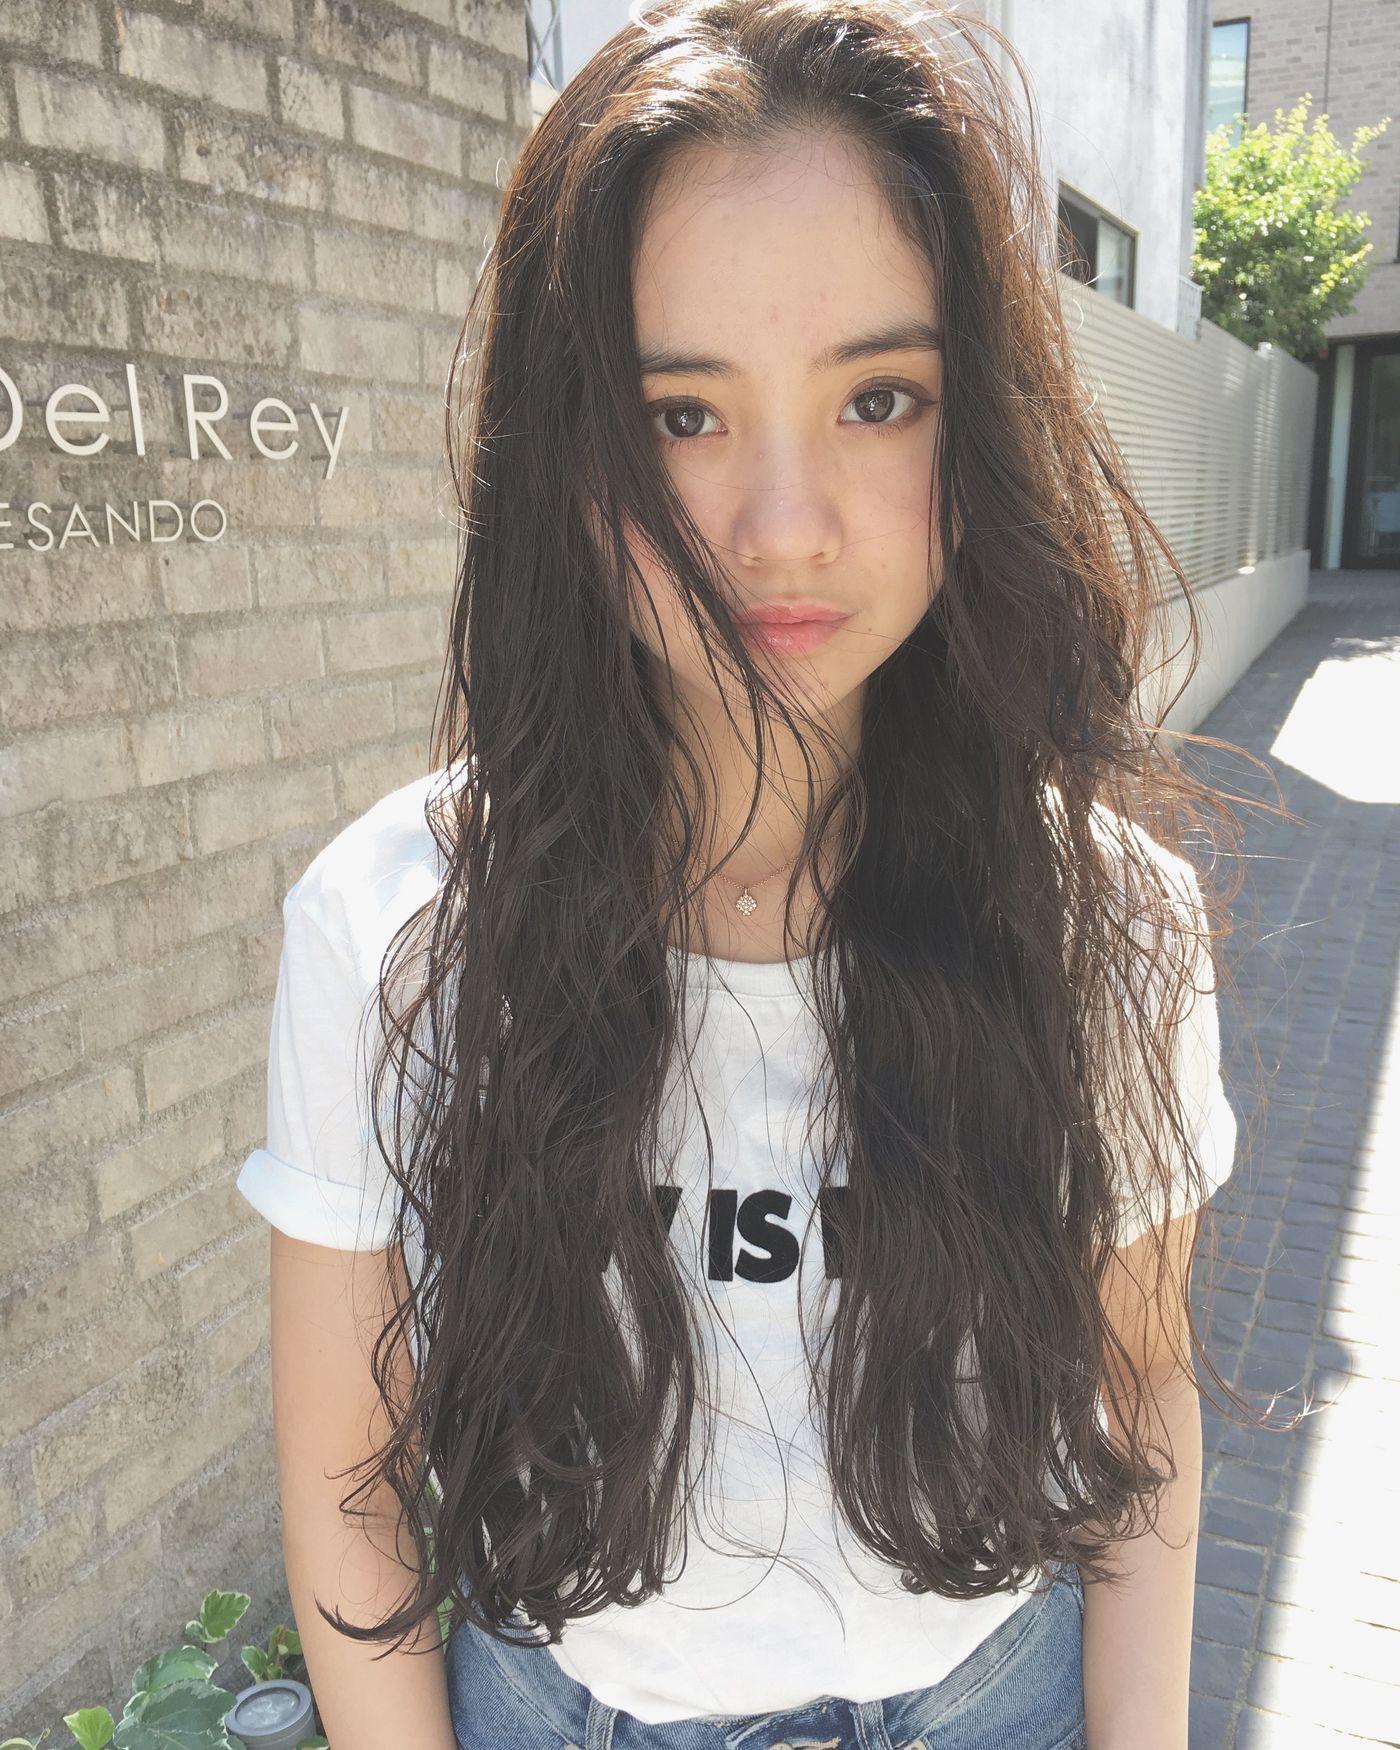 韓国女性の髪型 流行りランキングtop11 アレンジ方法も徹底紹介